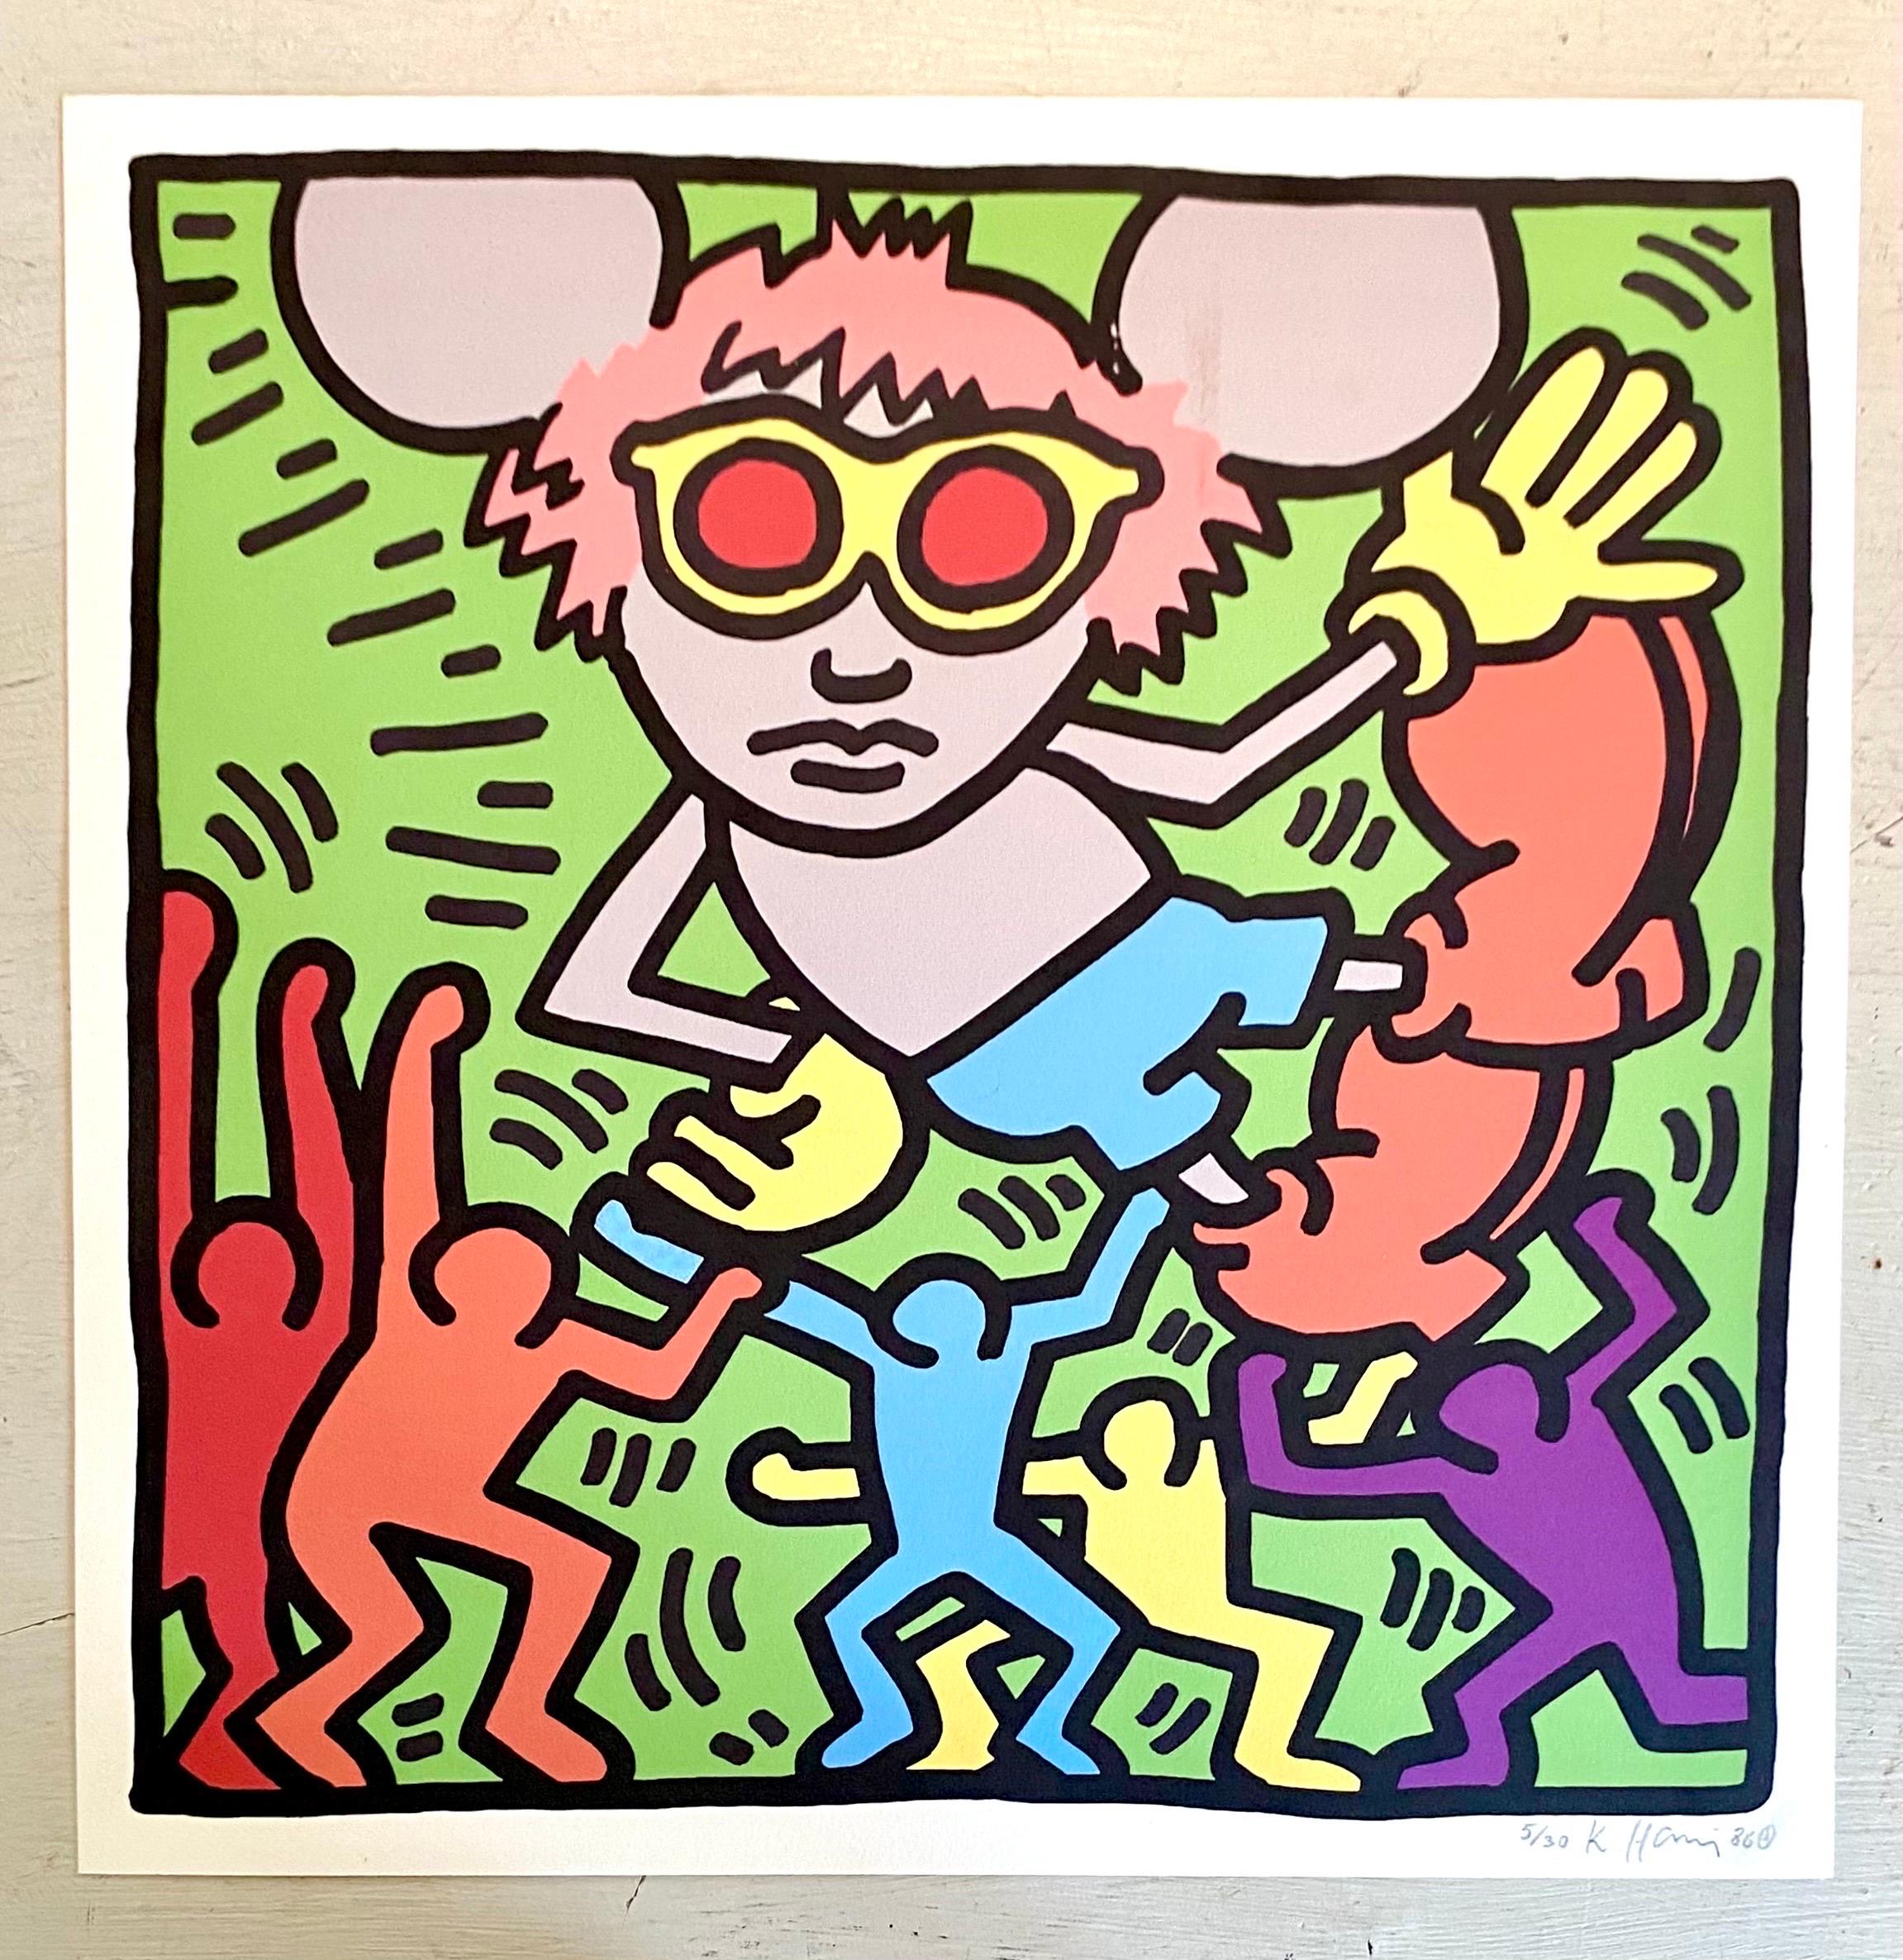 Sehr hübscher, farbenfroher und poppiger Siebdruck von Andy Mouse, Andy Warhol + Mickey Mouse, stellt die berühmte Maus mit einer Perücke und Sonnenbrille dar, die Warhols unverwechselbare Attribute sind.
Der Siebdruck ist handsigniert, nummeriert